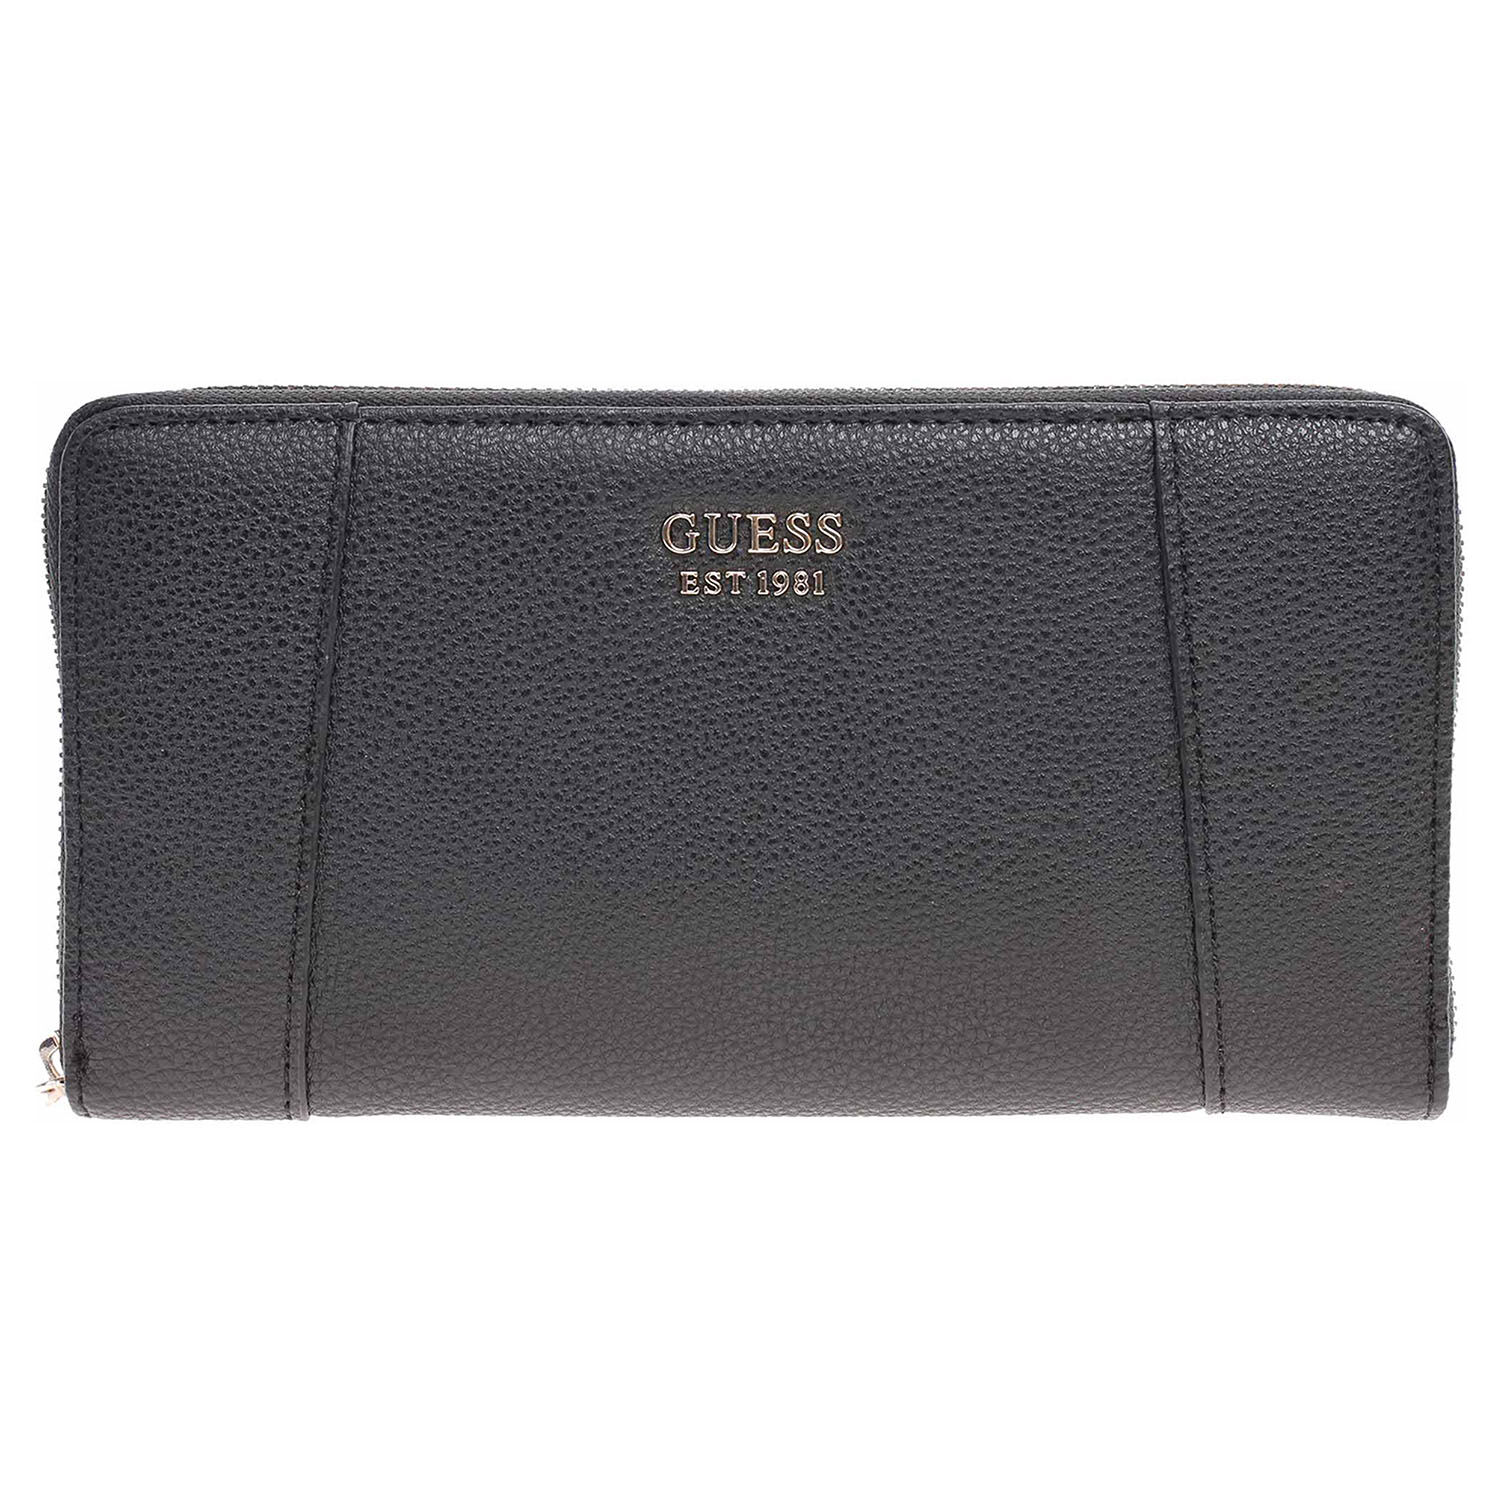 Guess dámská peněženka VG788163 black 1